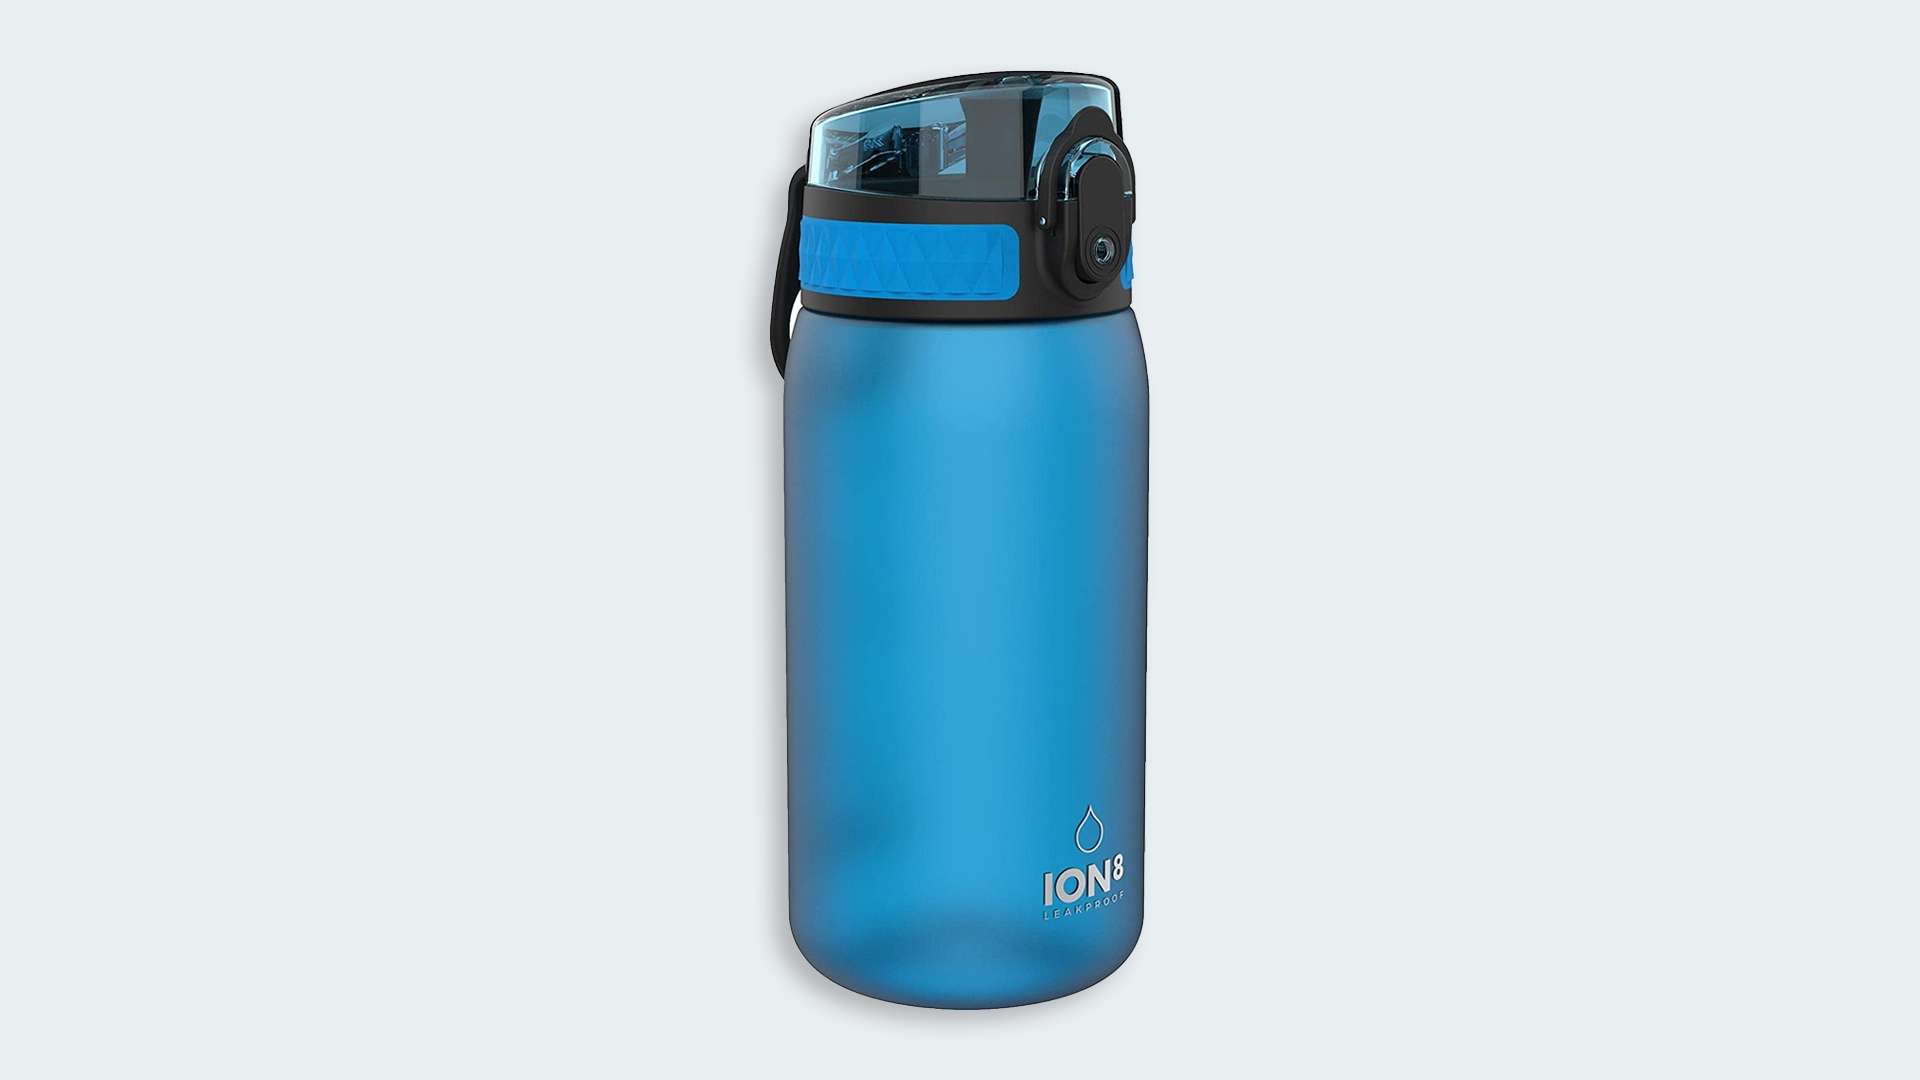 Ion8 leak proof kids' water bottle